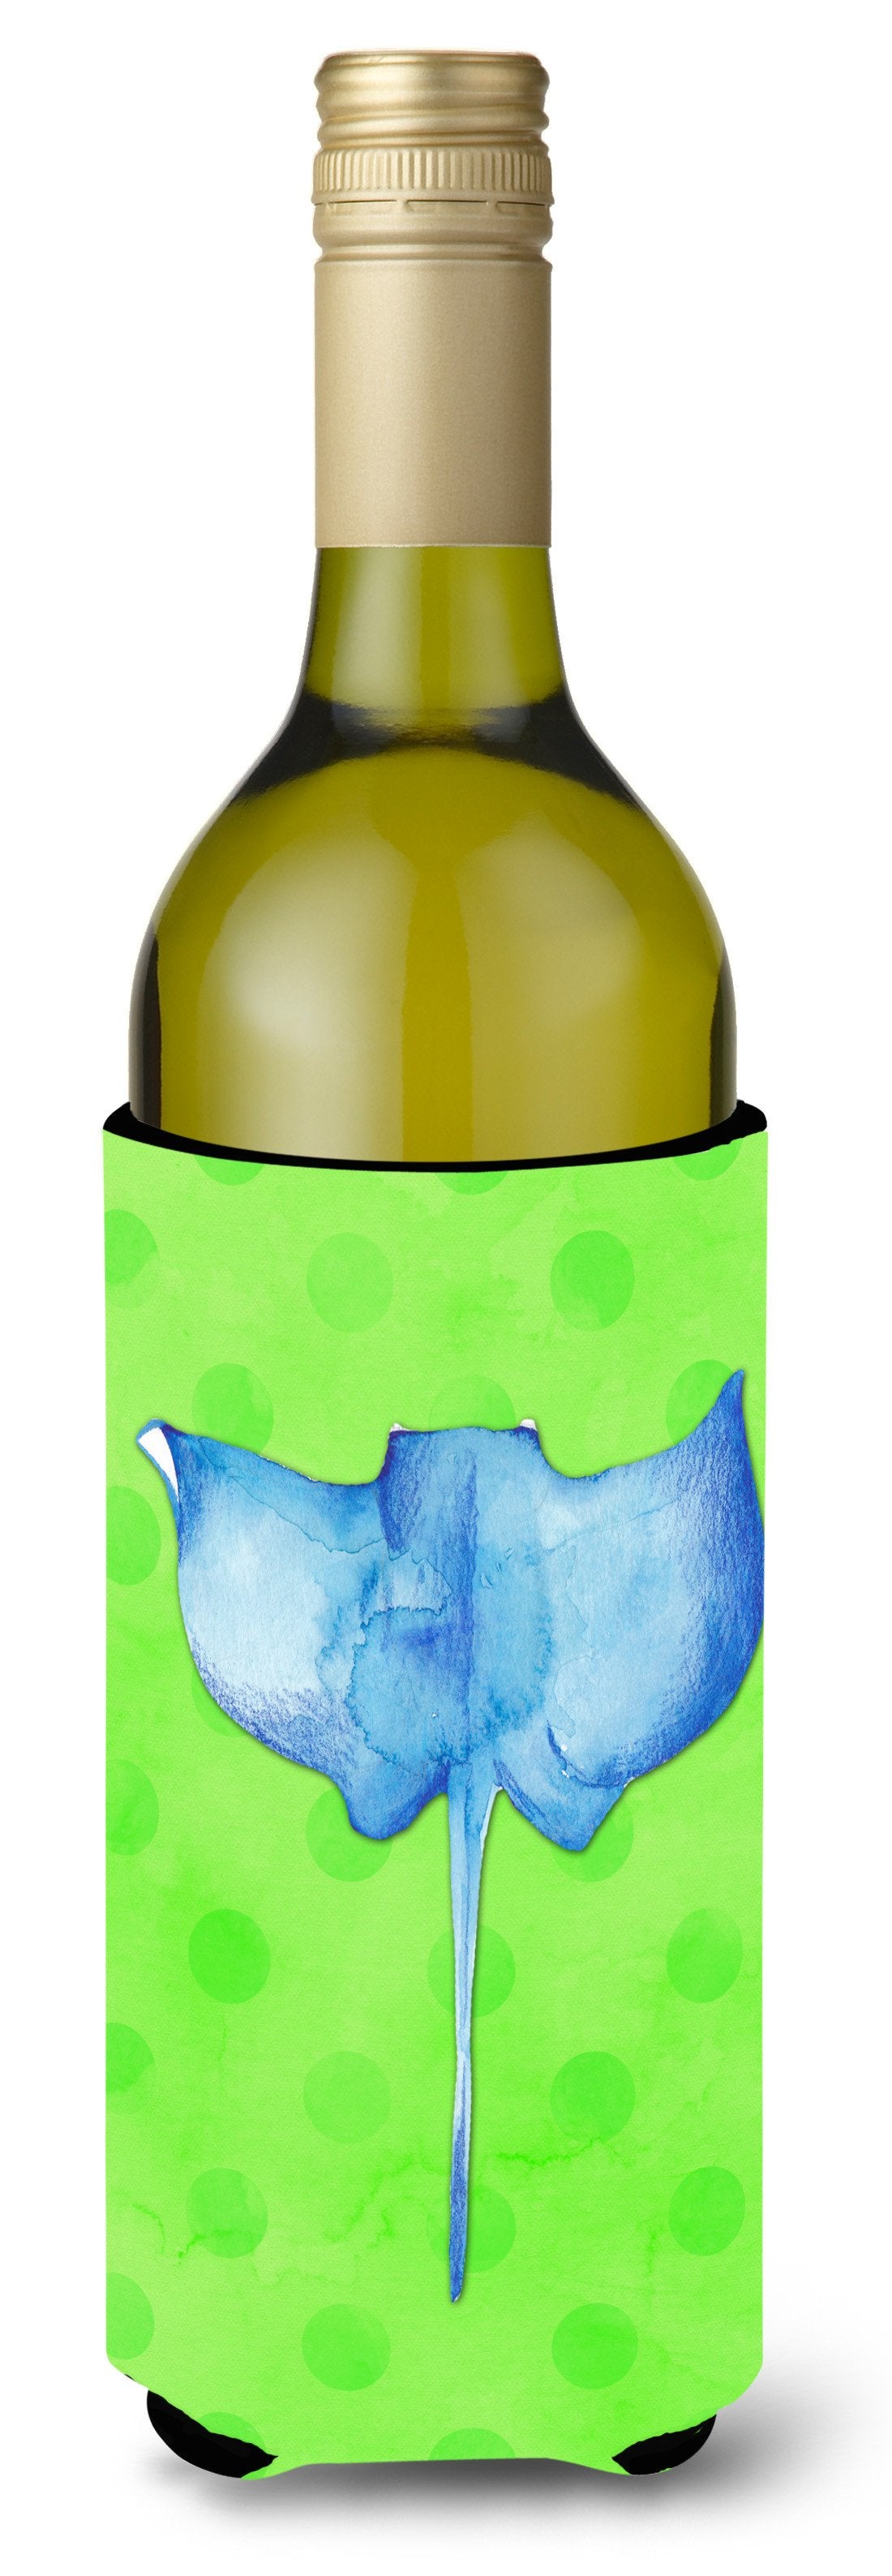 Sting Ray Green Polkadot Wine Bottle Beverge Insulator Hugger BB8235LITERK by Caroline's Treasures